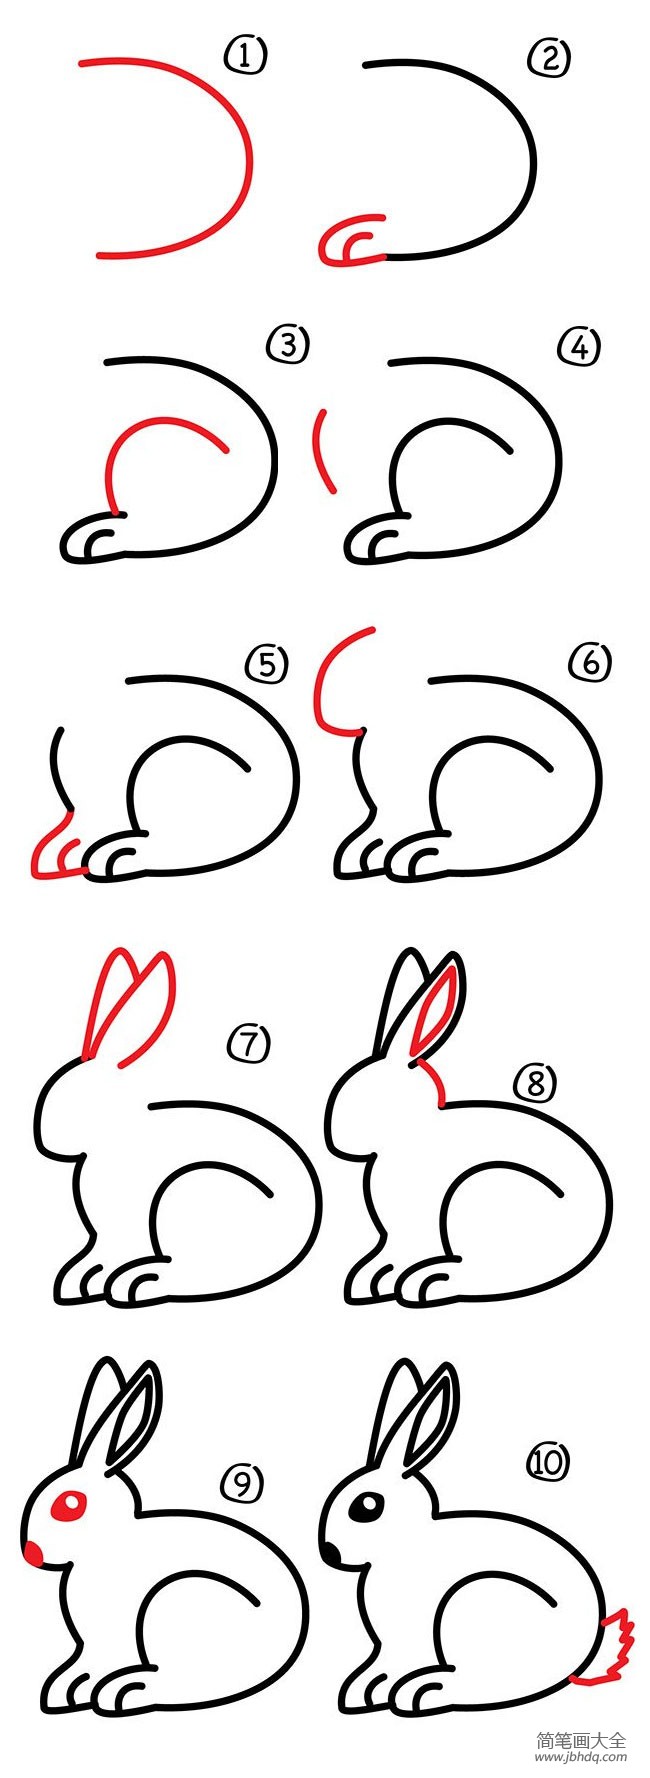 简笔画教程兔子简笔画步骤图